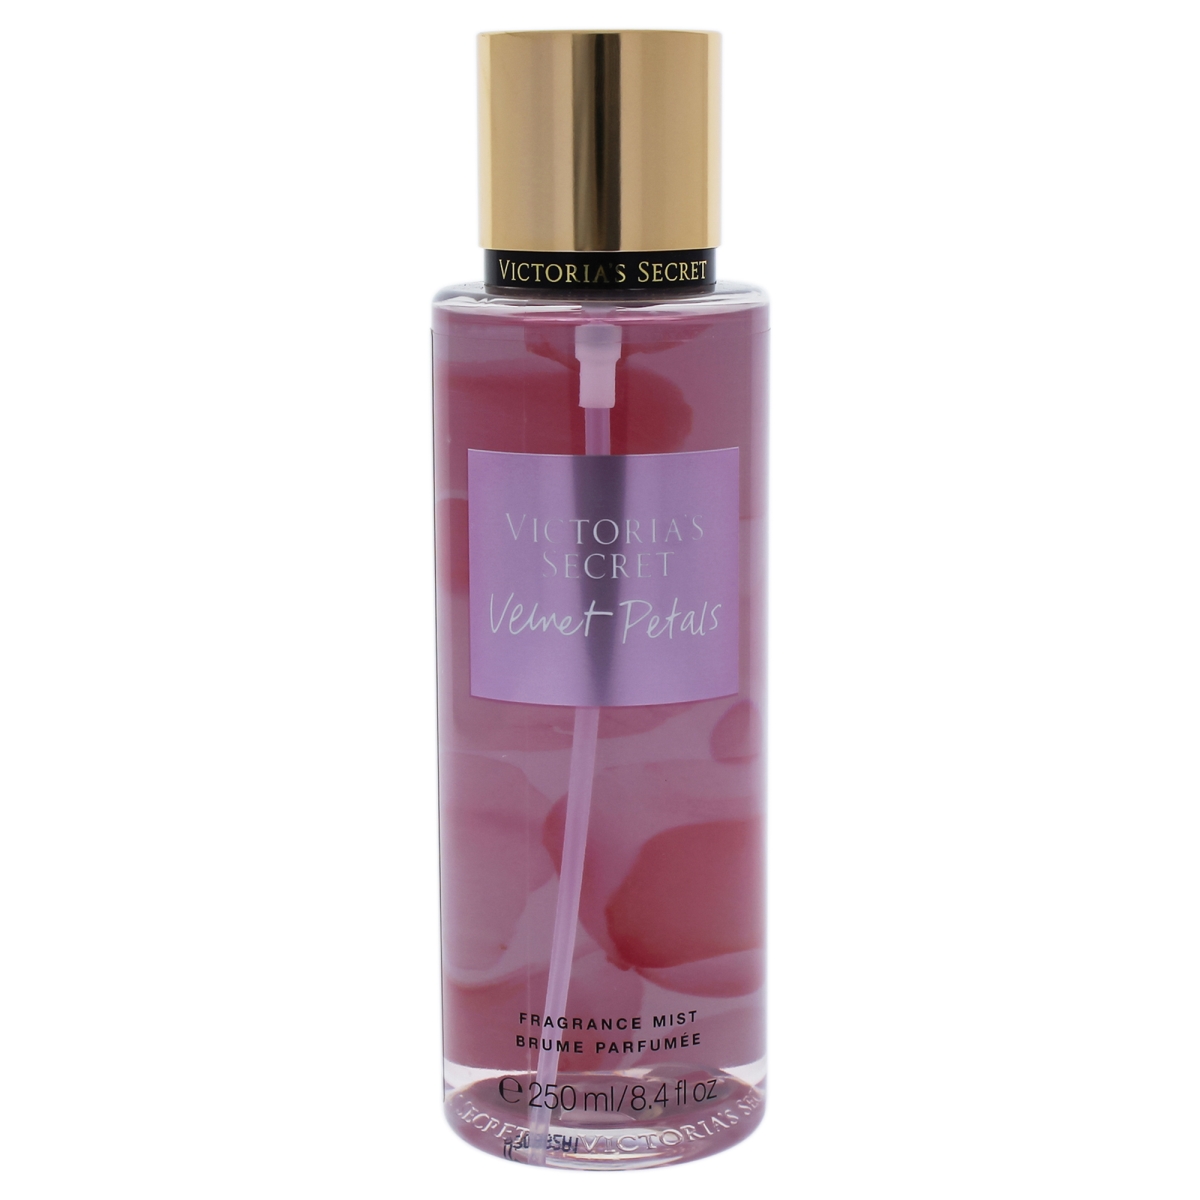 I0091236 Velvet Petals Fragrance Mist For Women - 8.4 Oz